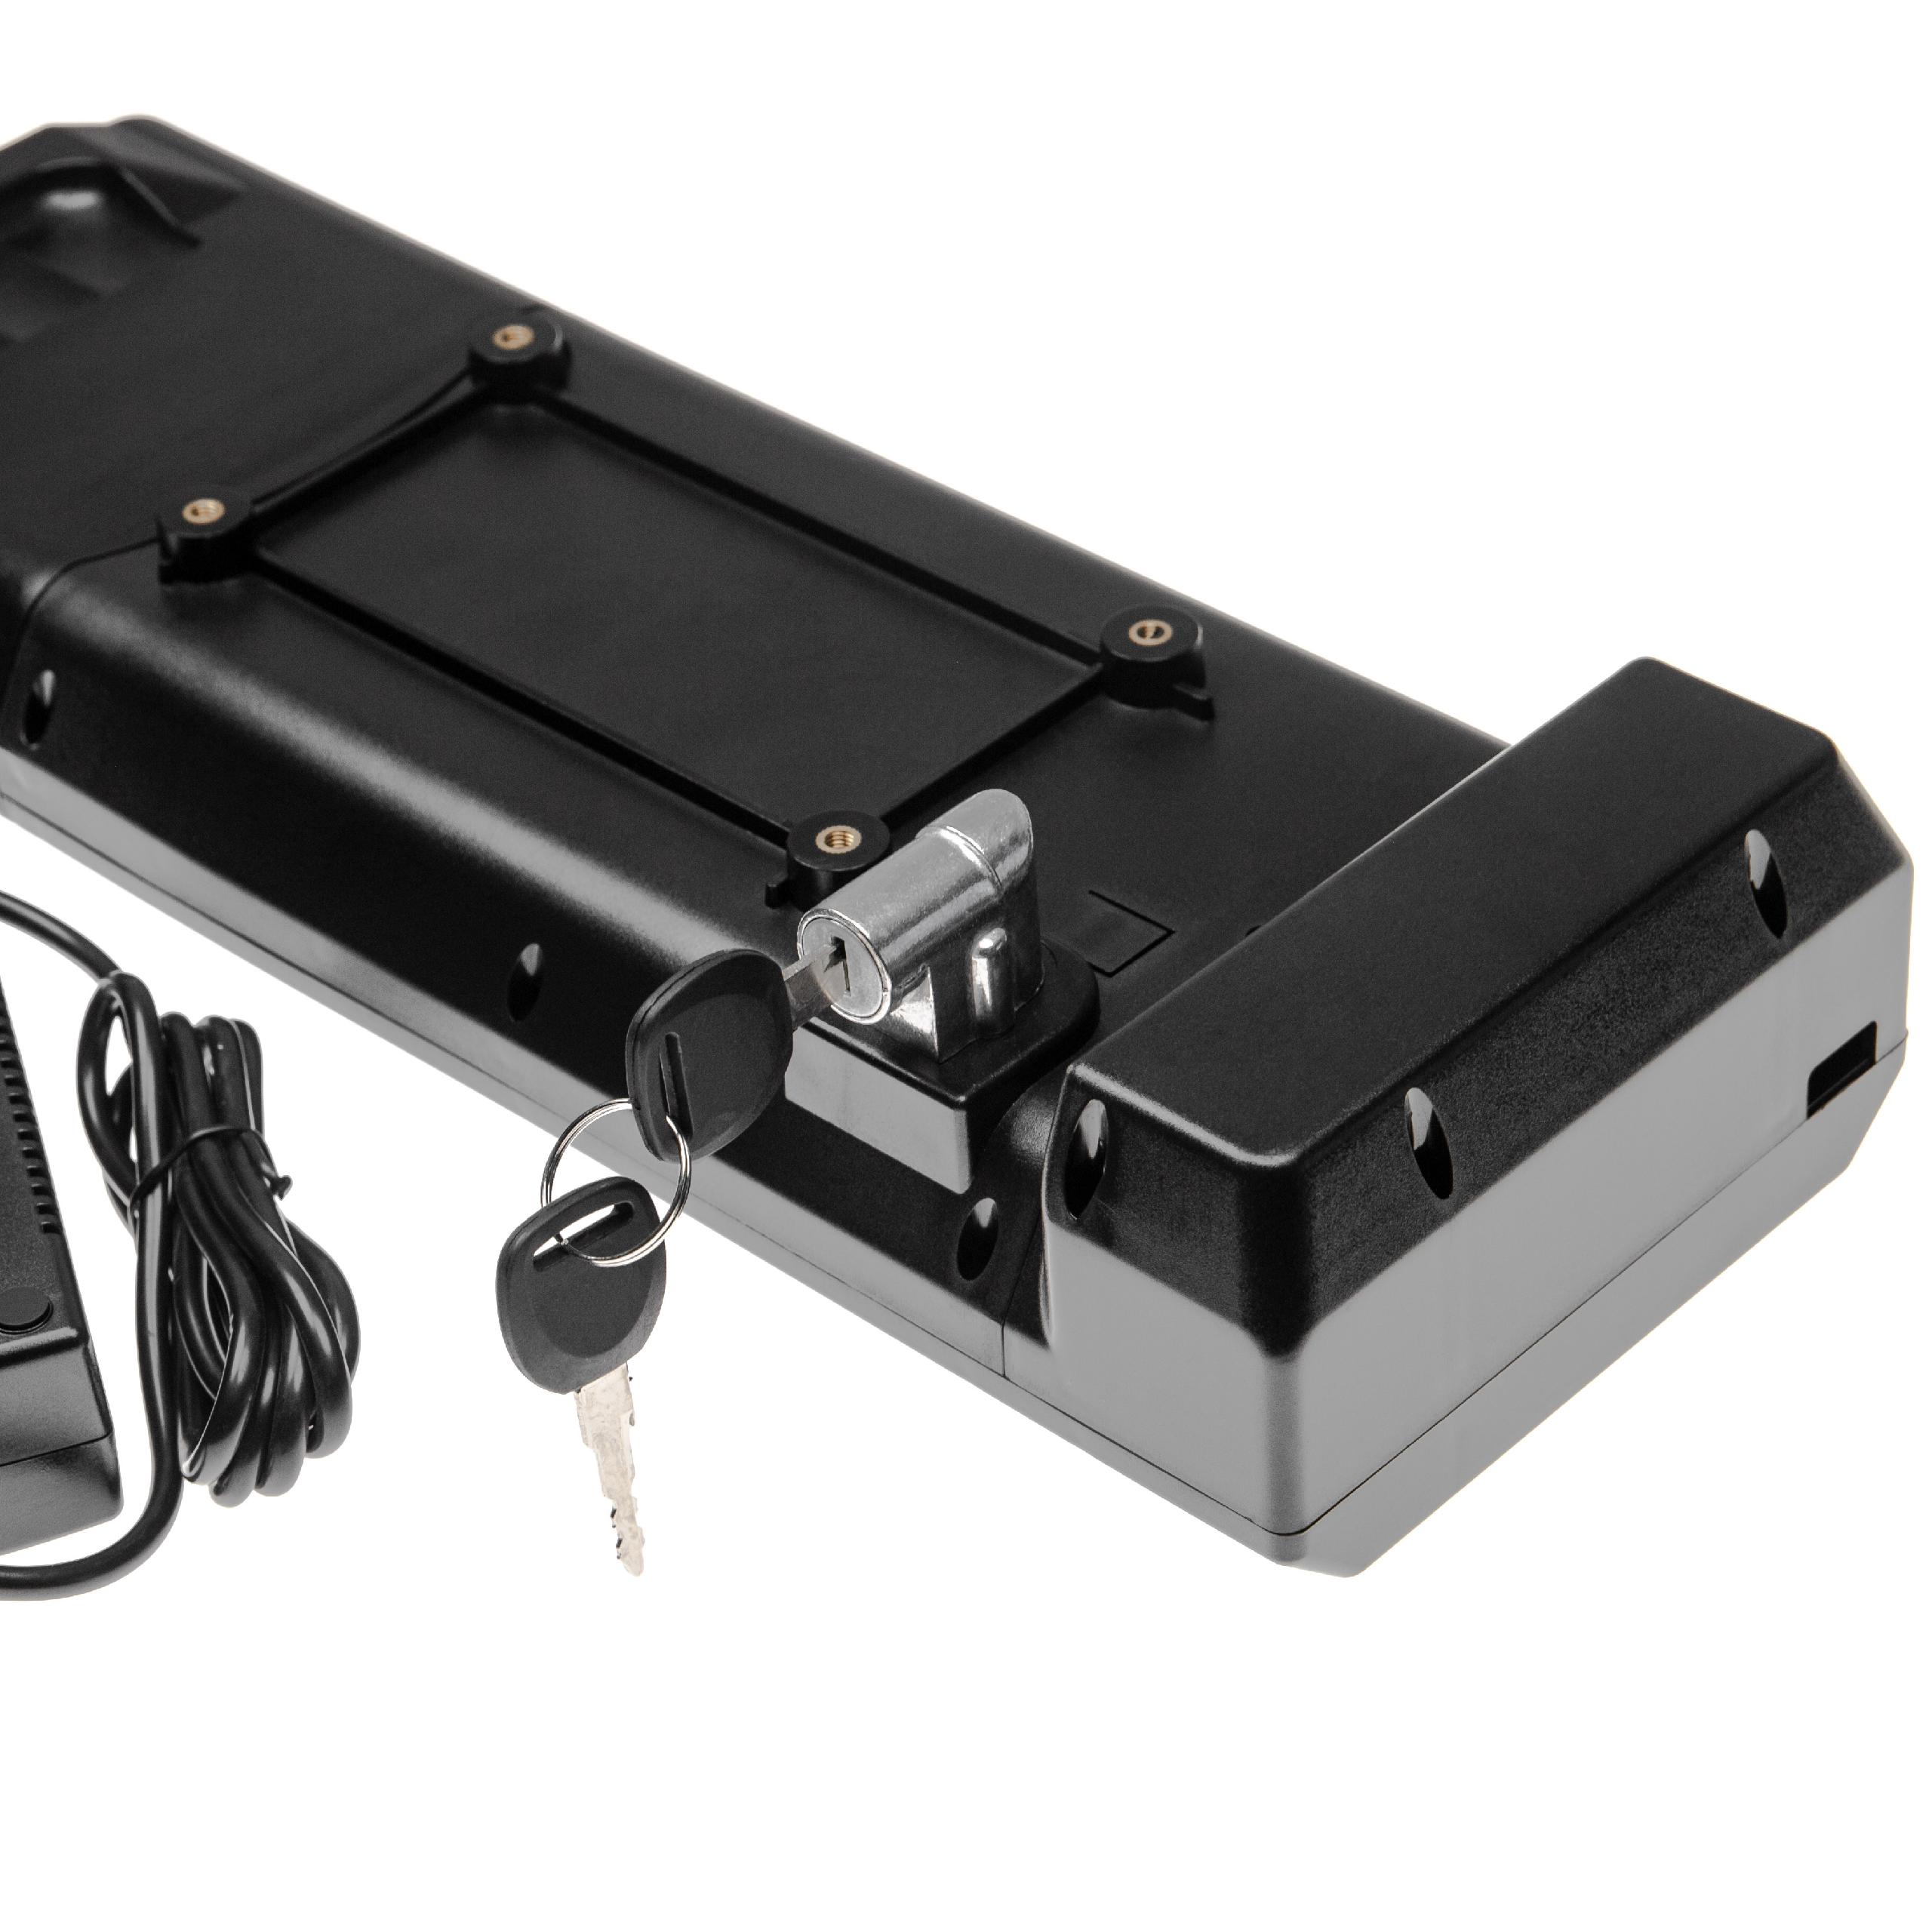 Batteria per portapacchi con sistema d'inserimento + caricatore per e-bike - 8800mAh, Li-Ion